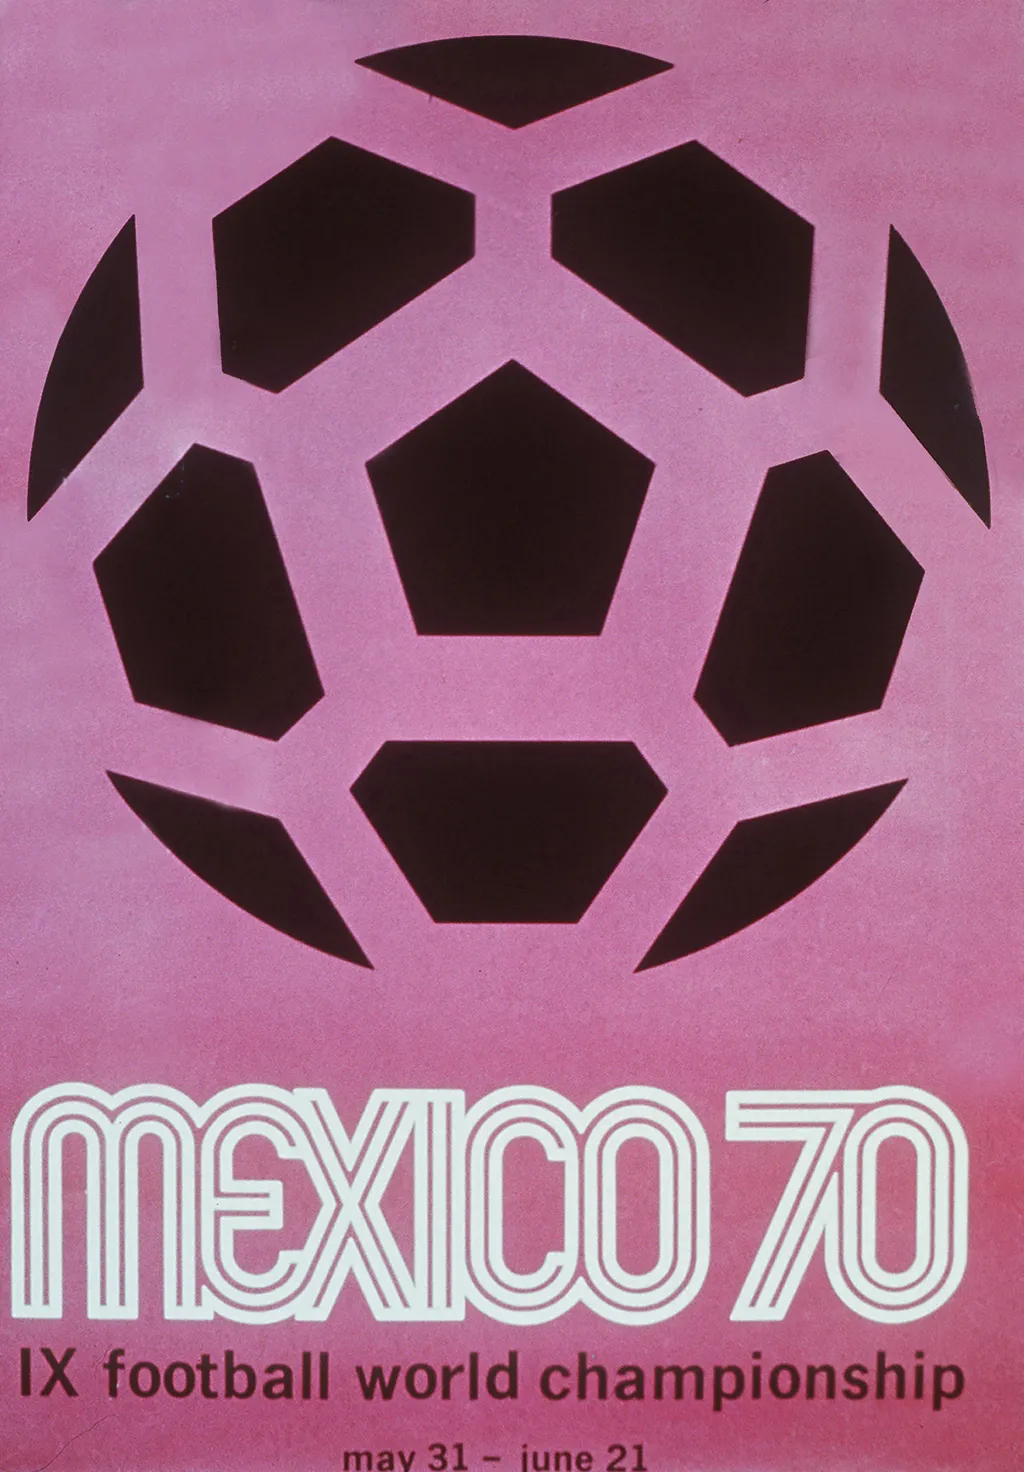 Labdarúgó-világbajnokság, labdarúgóvébé, futballvébé, labdarúgás, hivatalos plakát, poszter, 1970, Mexikó 